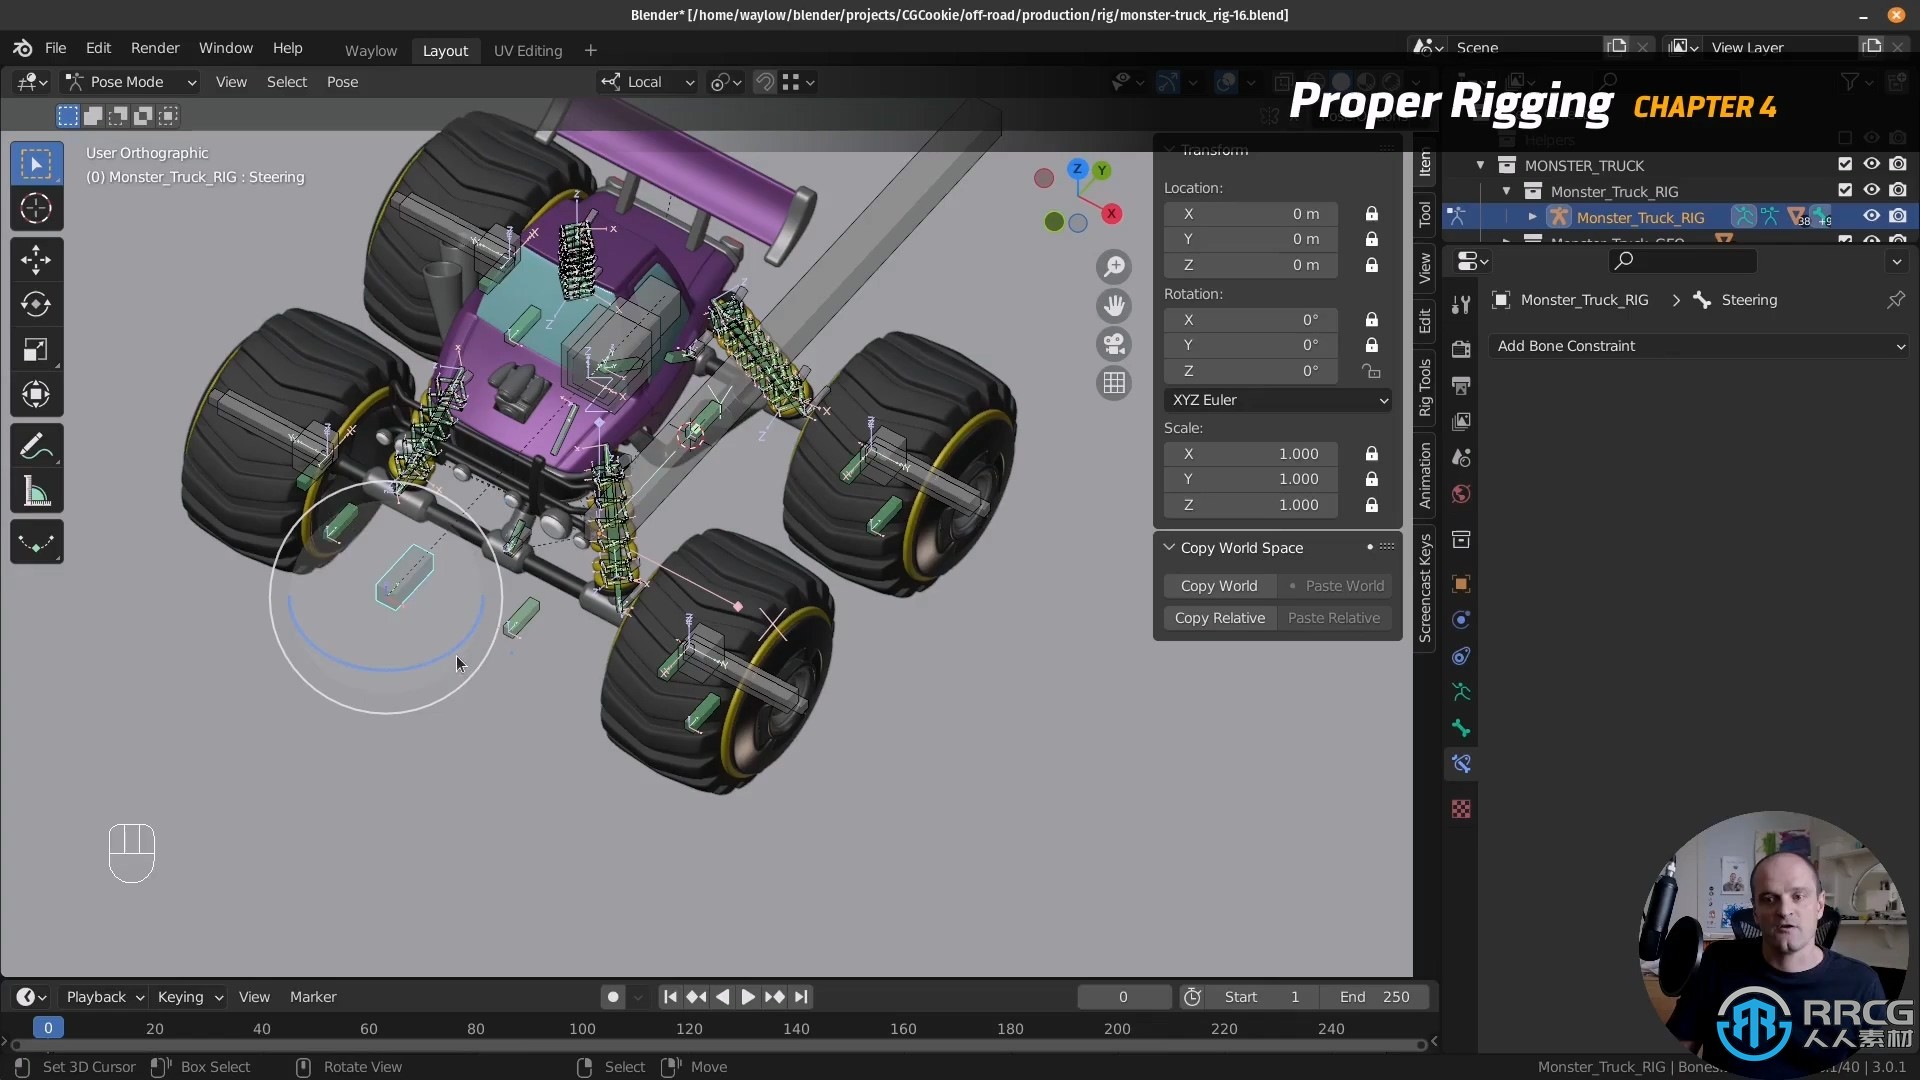 Blender越野车绑定动画完整实例制作流程视频教程